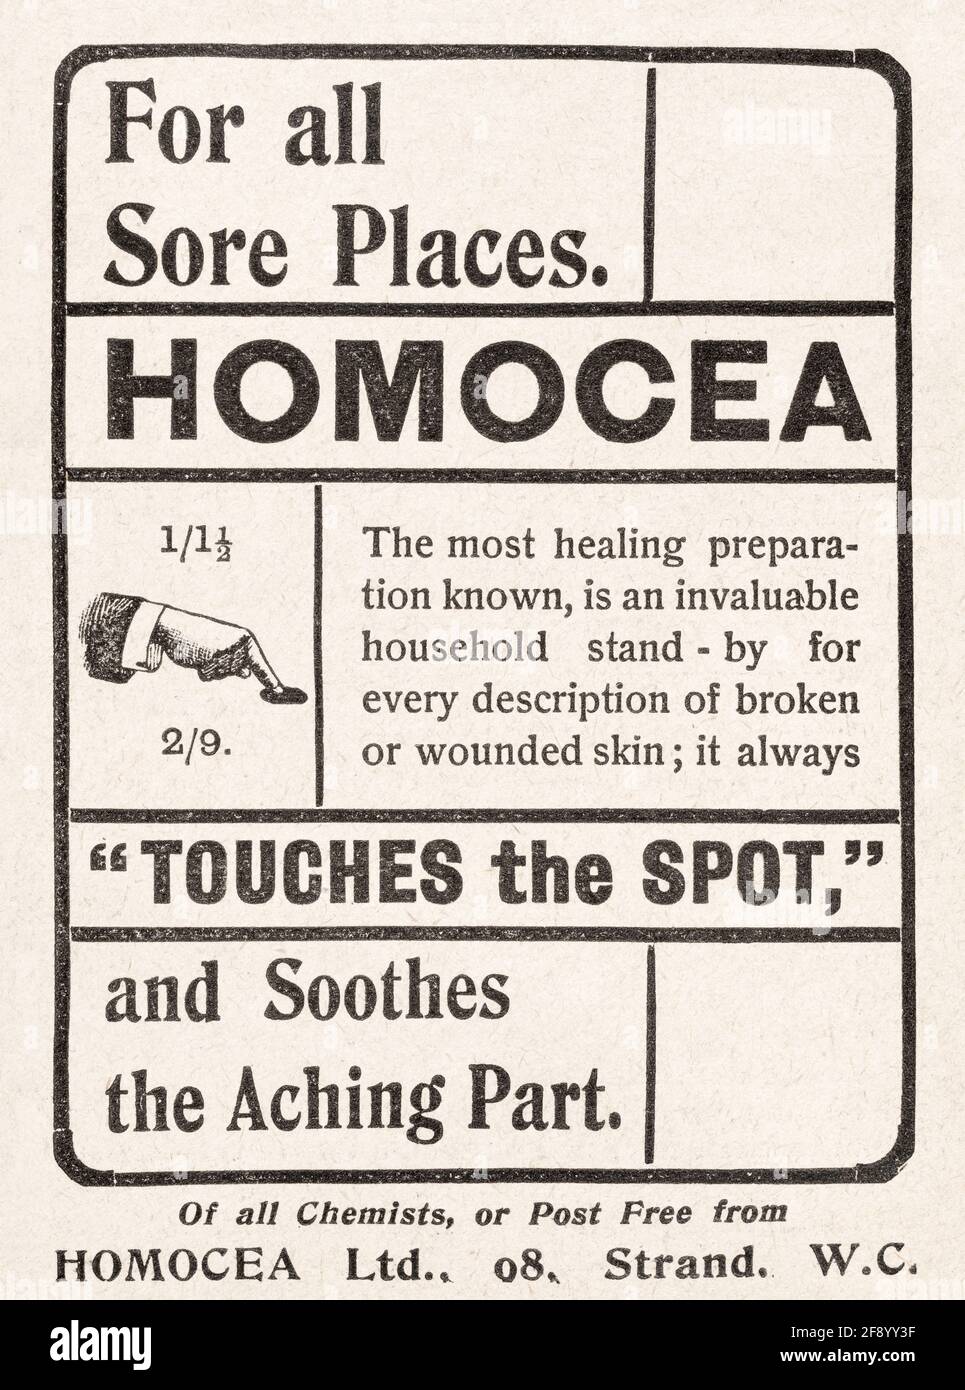 Alte Vintage viktorianische Homocea Salbe Anzeige von 1901 - vor dem Anbruch der Werbestandards. Geschichte der medizinischen Werbung, Schlangenöl Anzeigen. Stockfoto